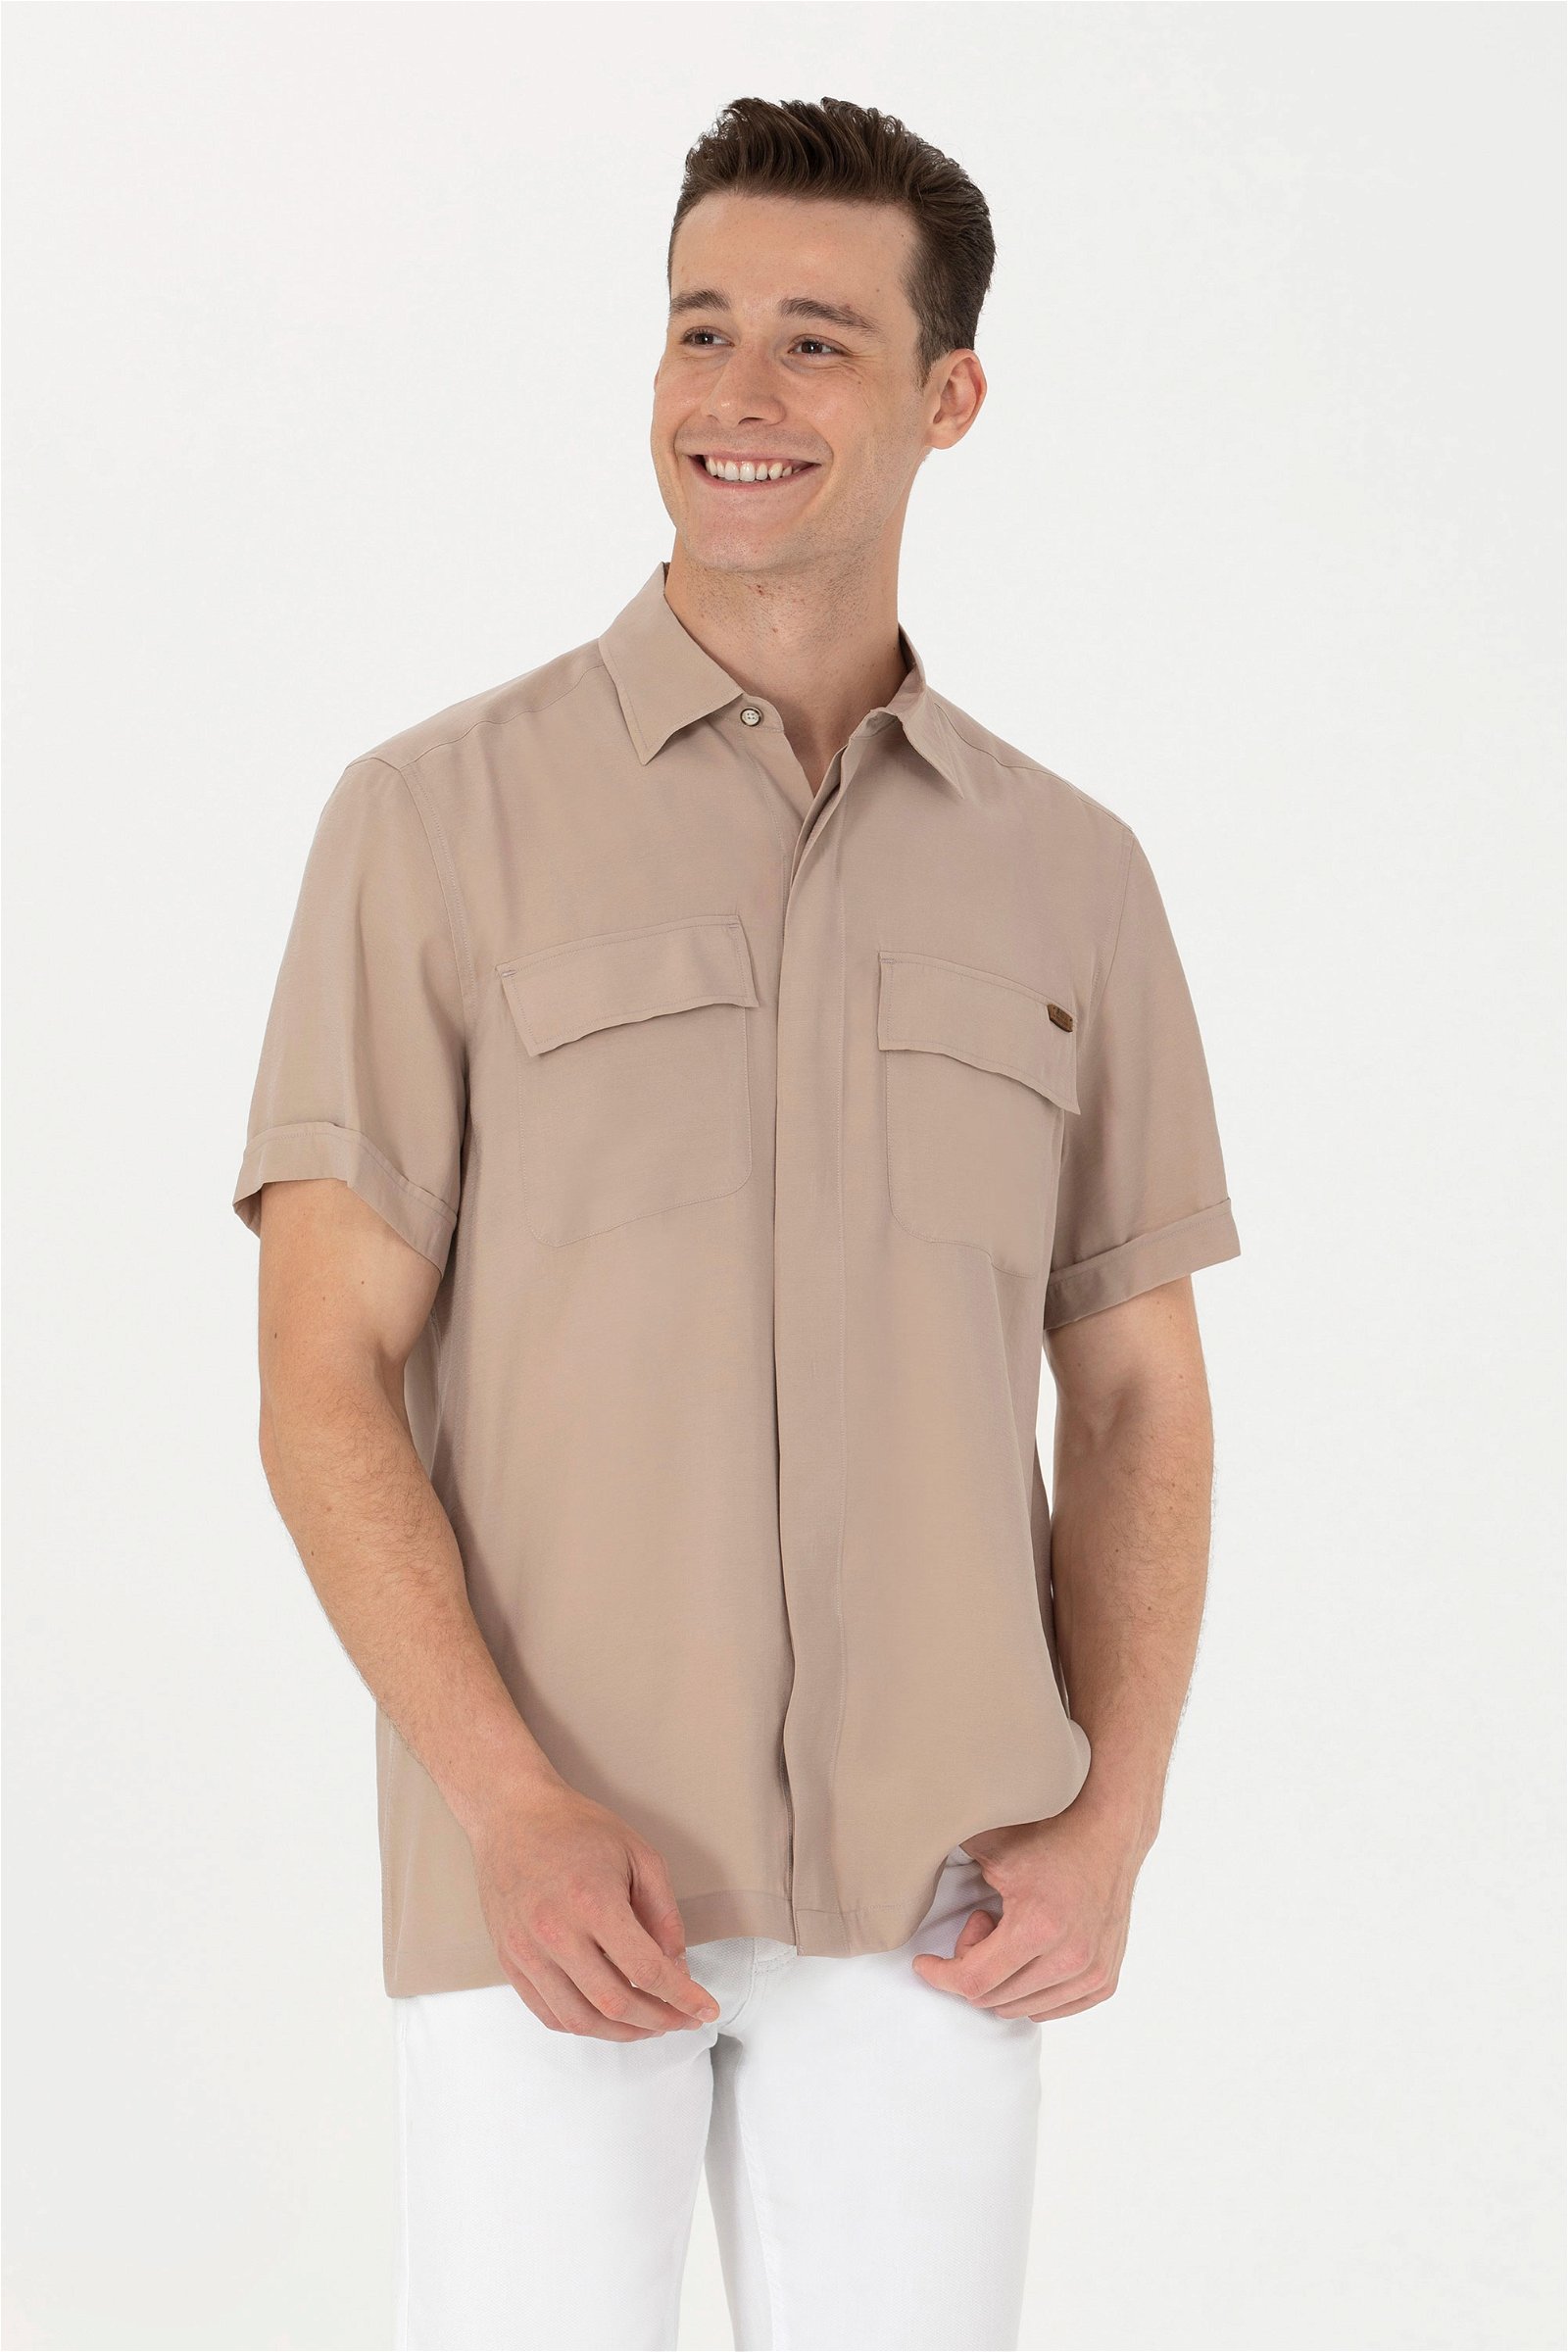 پیراهن  خاکستری  ریلکس  مردانه یو اس پولو | US POLO ASSN